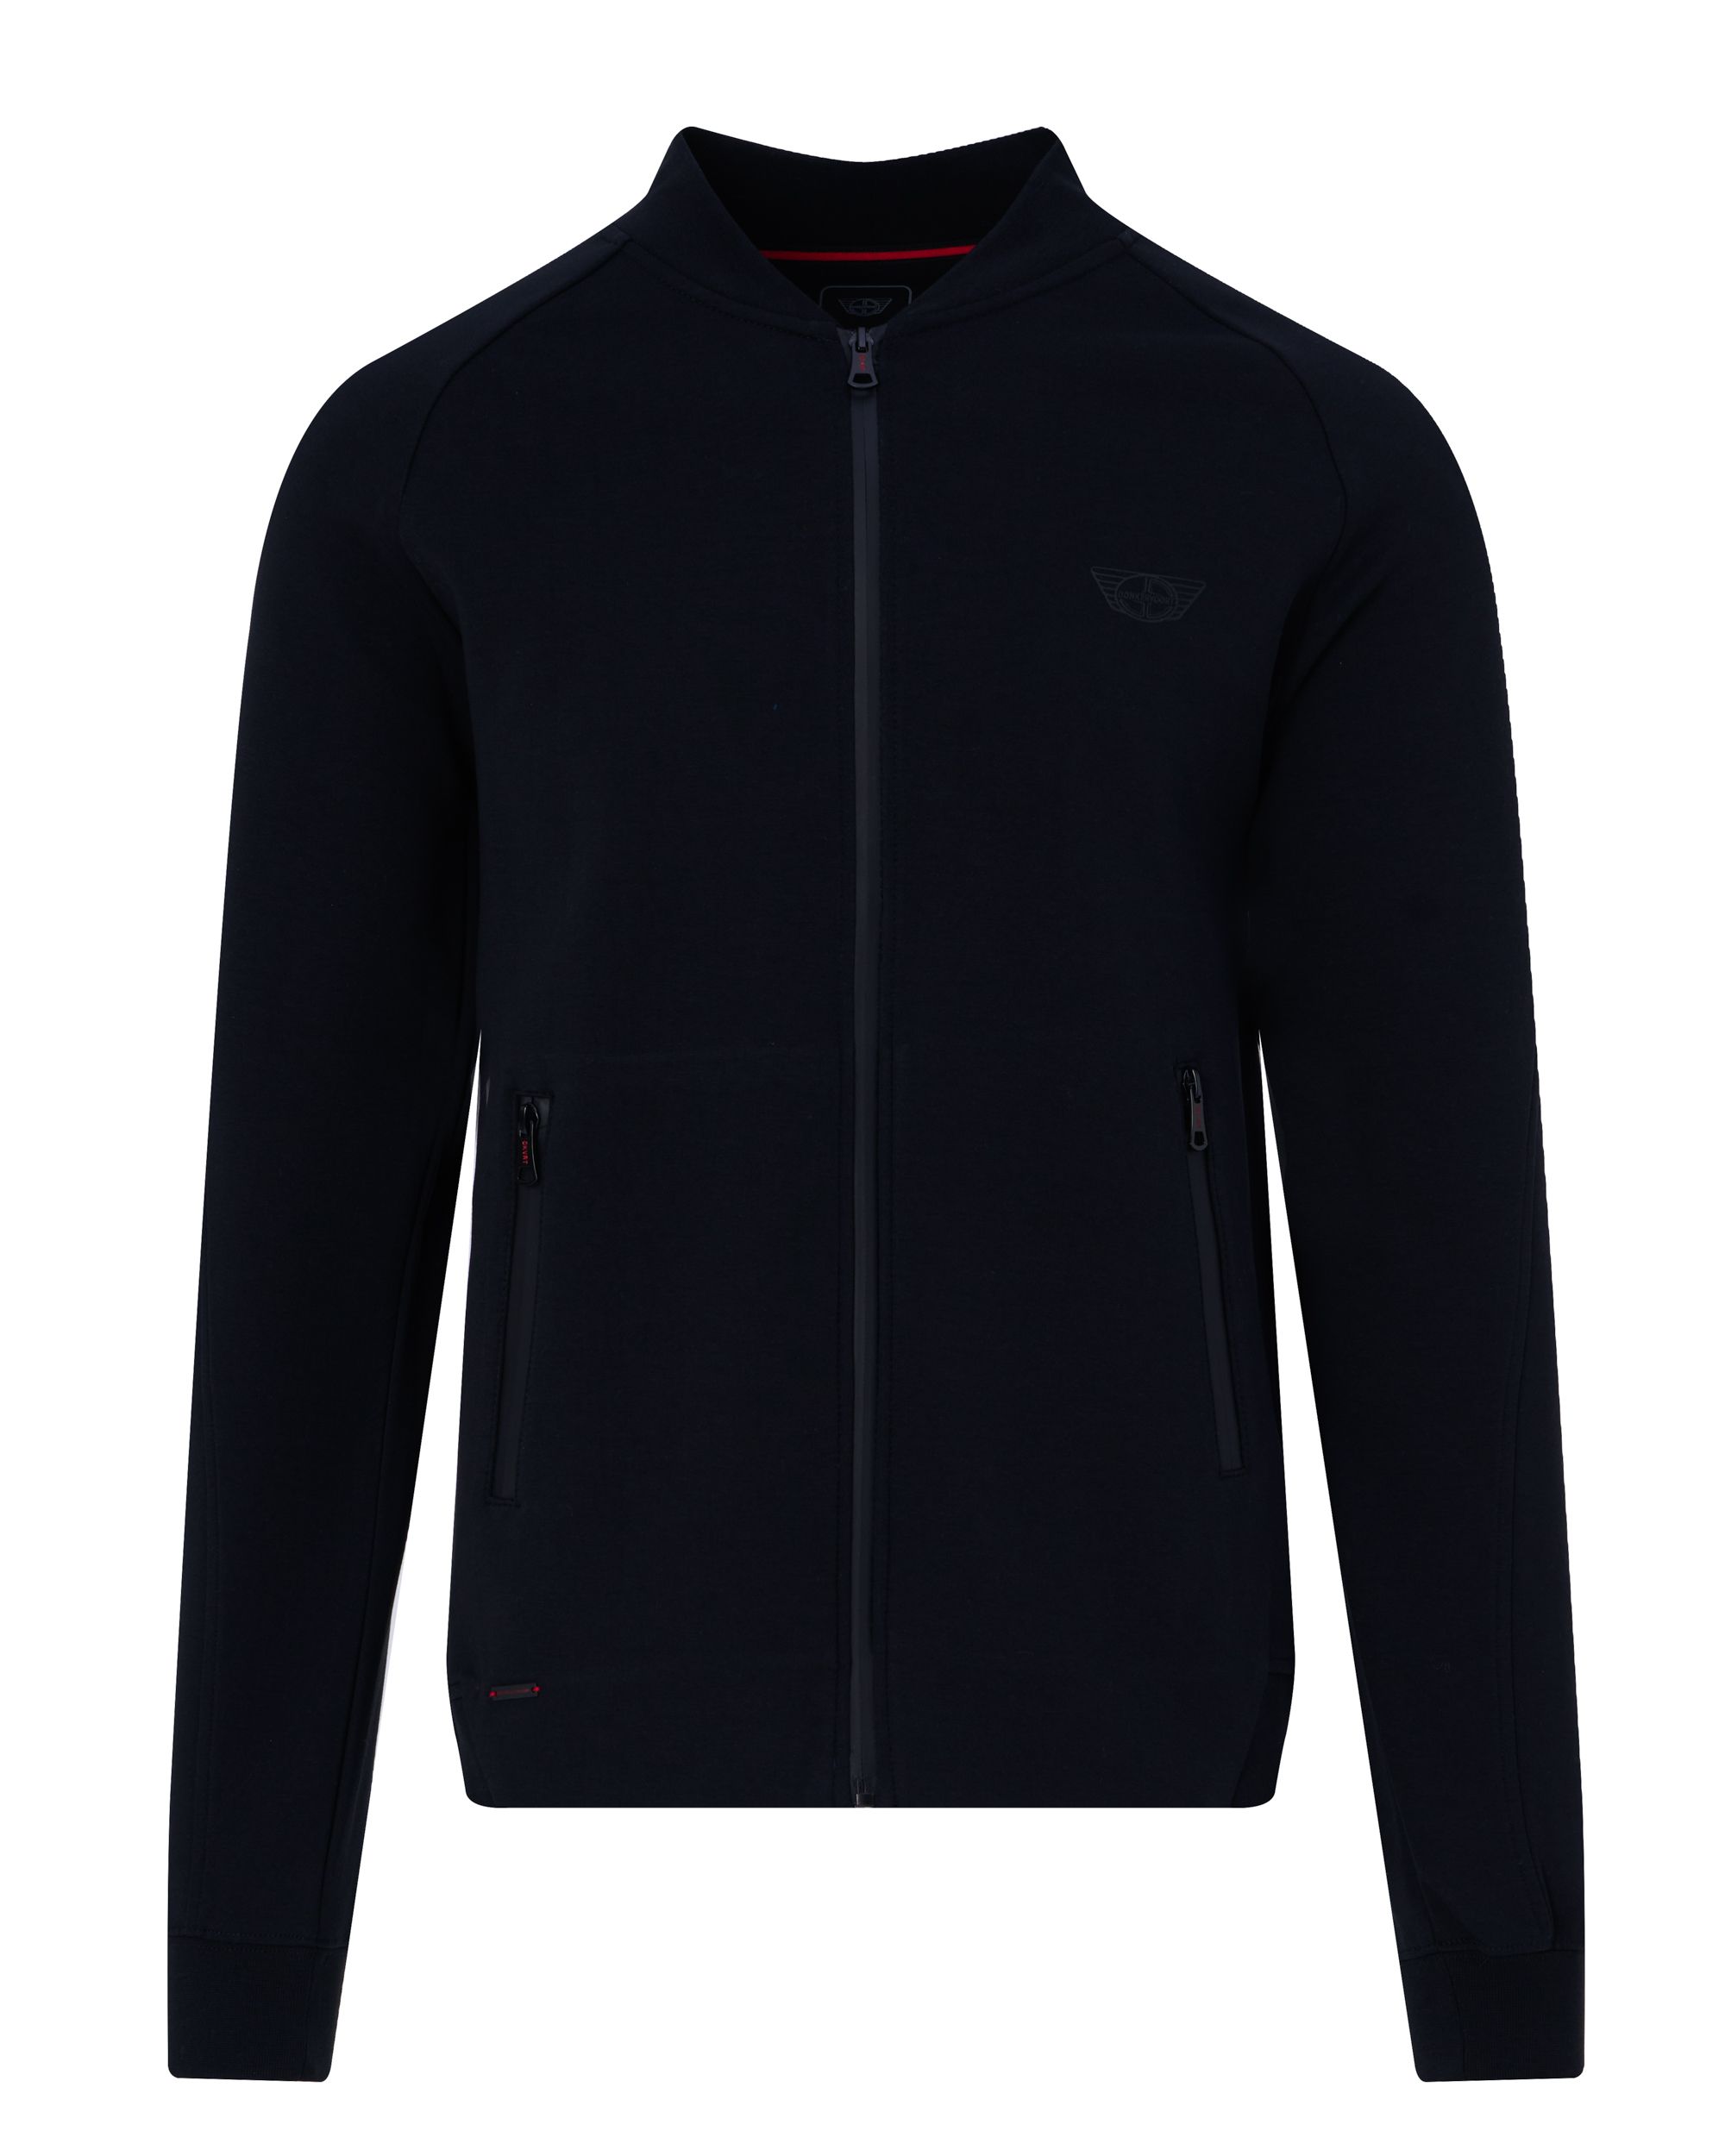 Donkervoort-full zip sweatshirt Black 092467-001-L